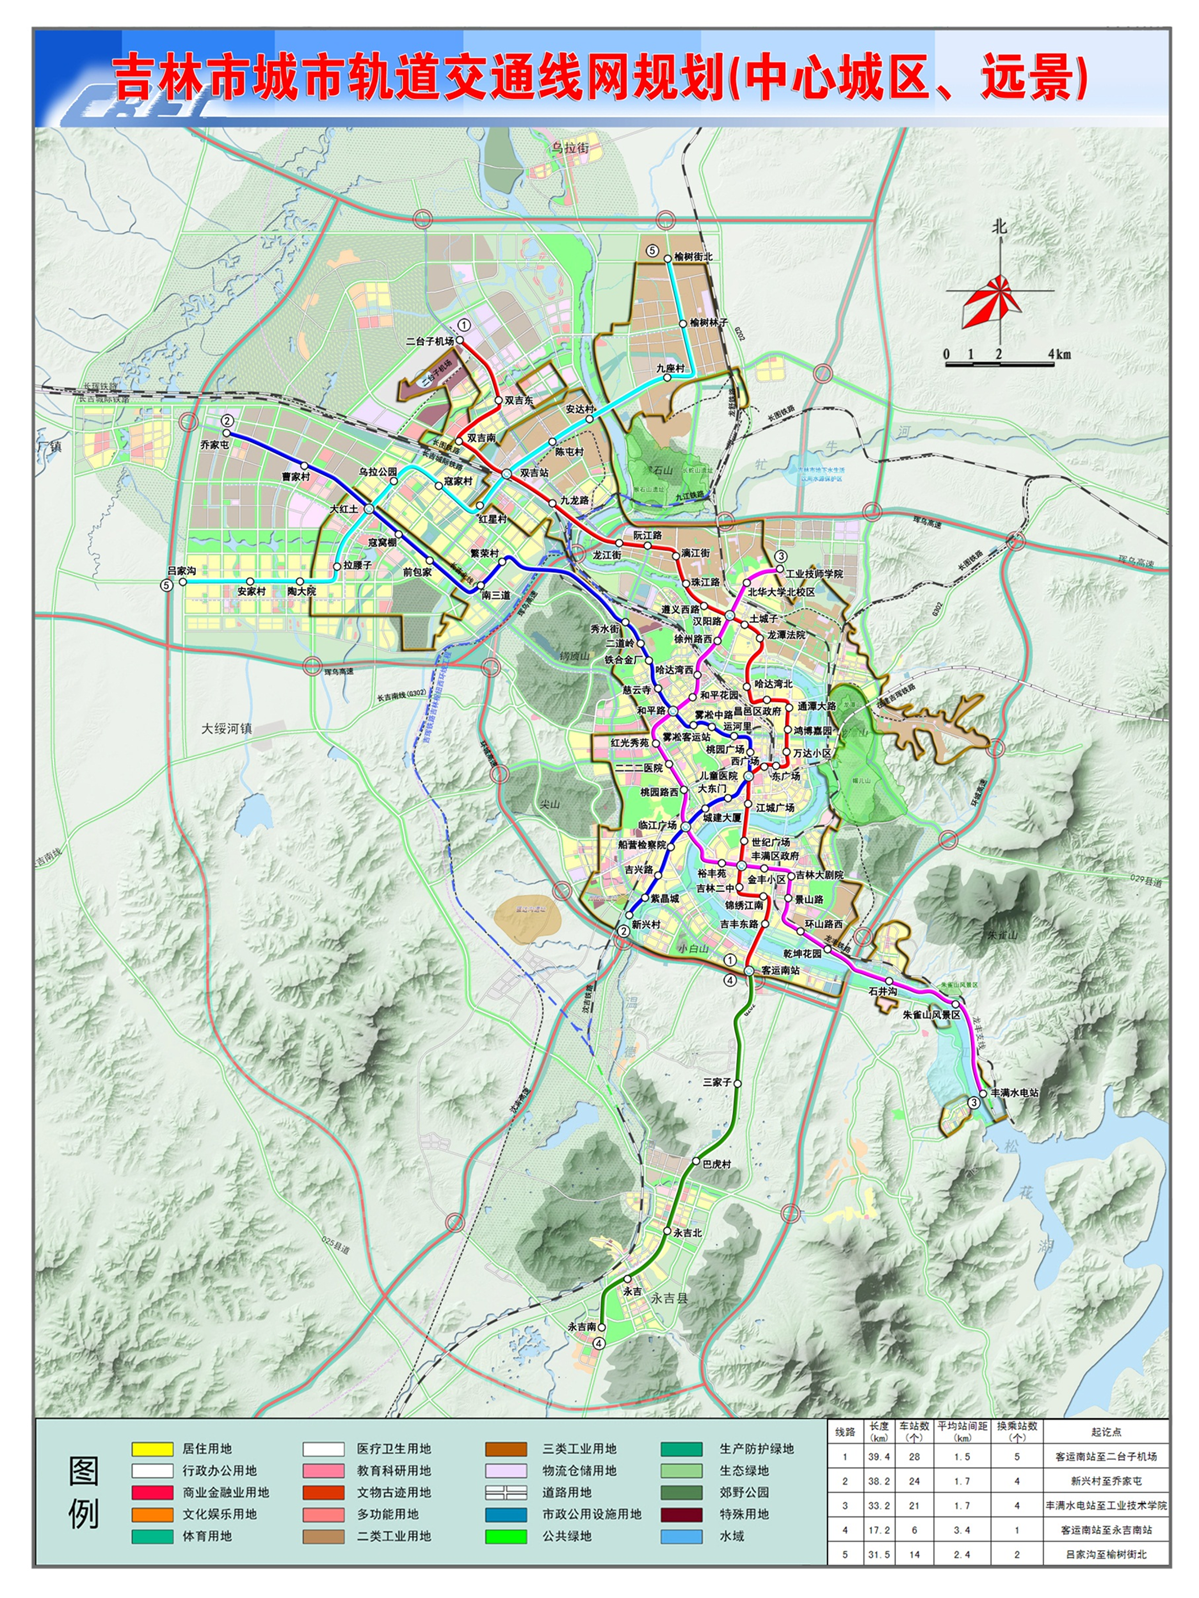 吉林市城市軌道交通線路圖